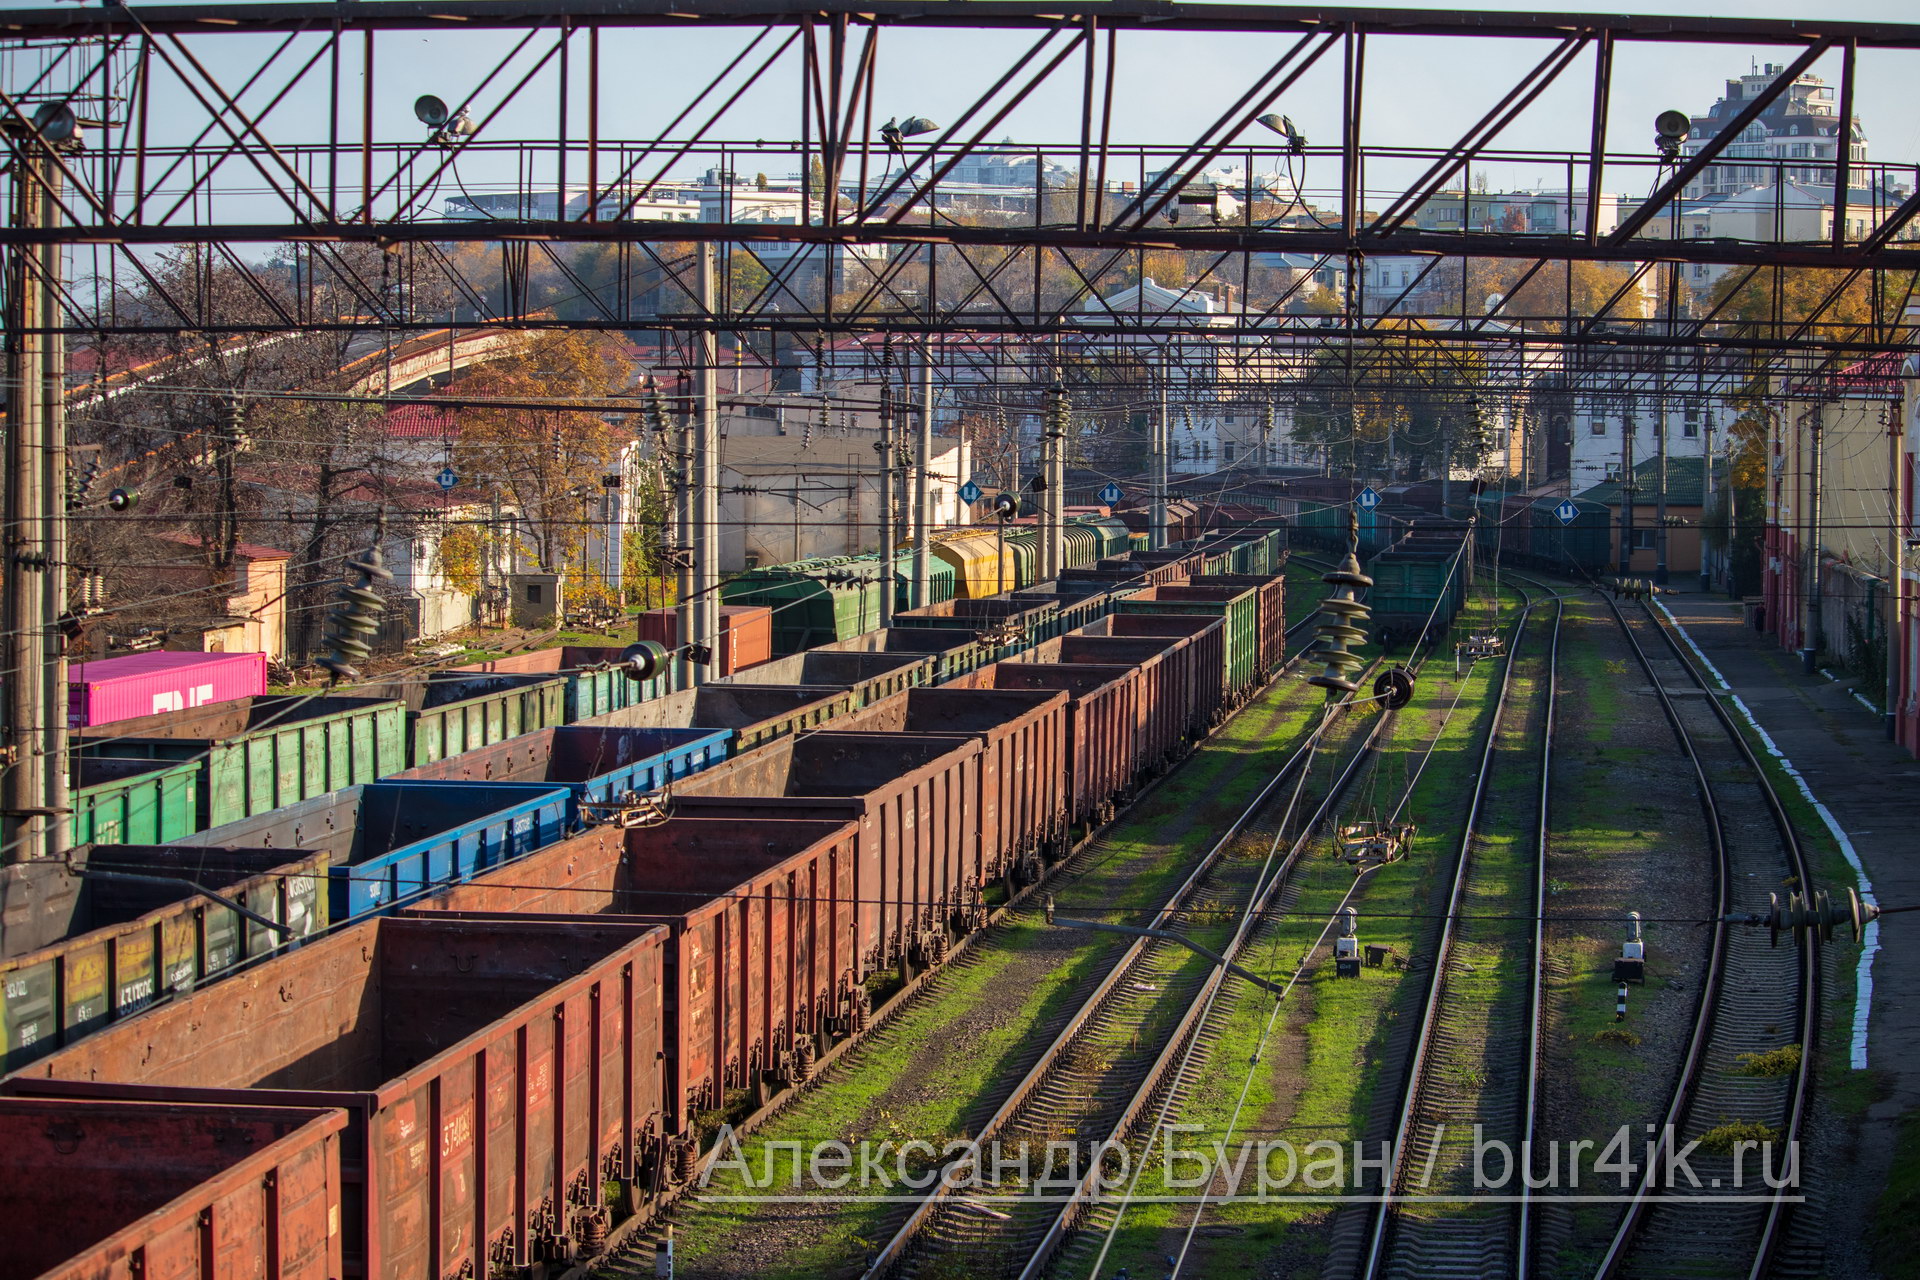 Грузовые железнодорожные вагоны и зеленая трава осенью в порт - Украина, Одесса, 17,10,2019